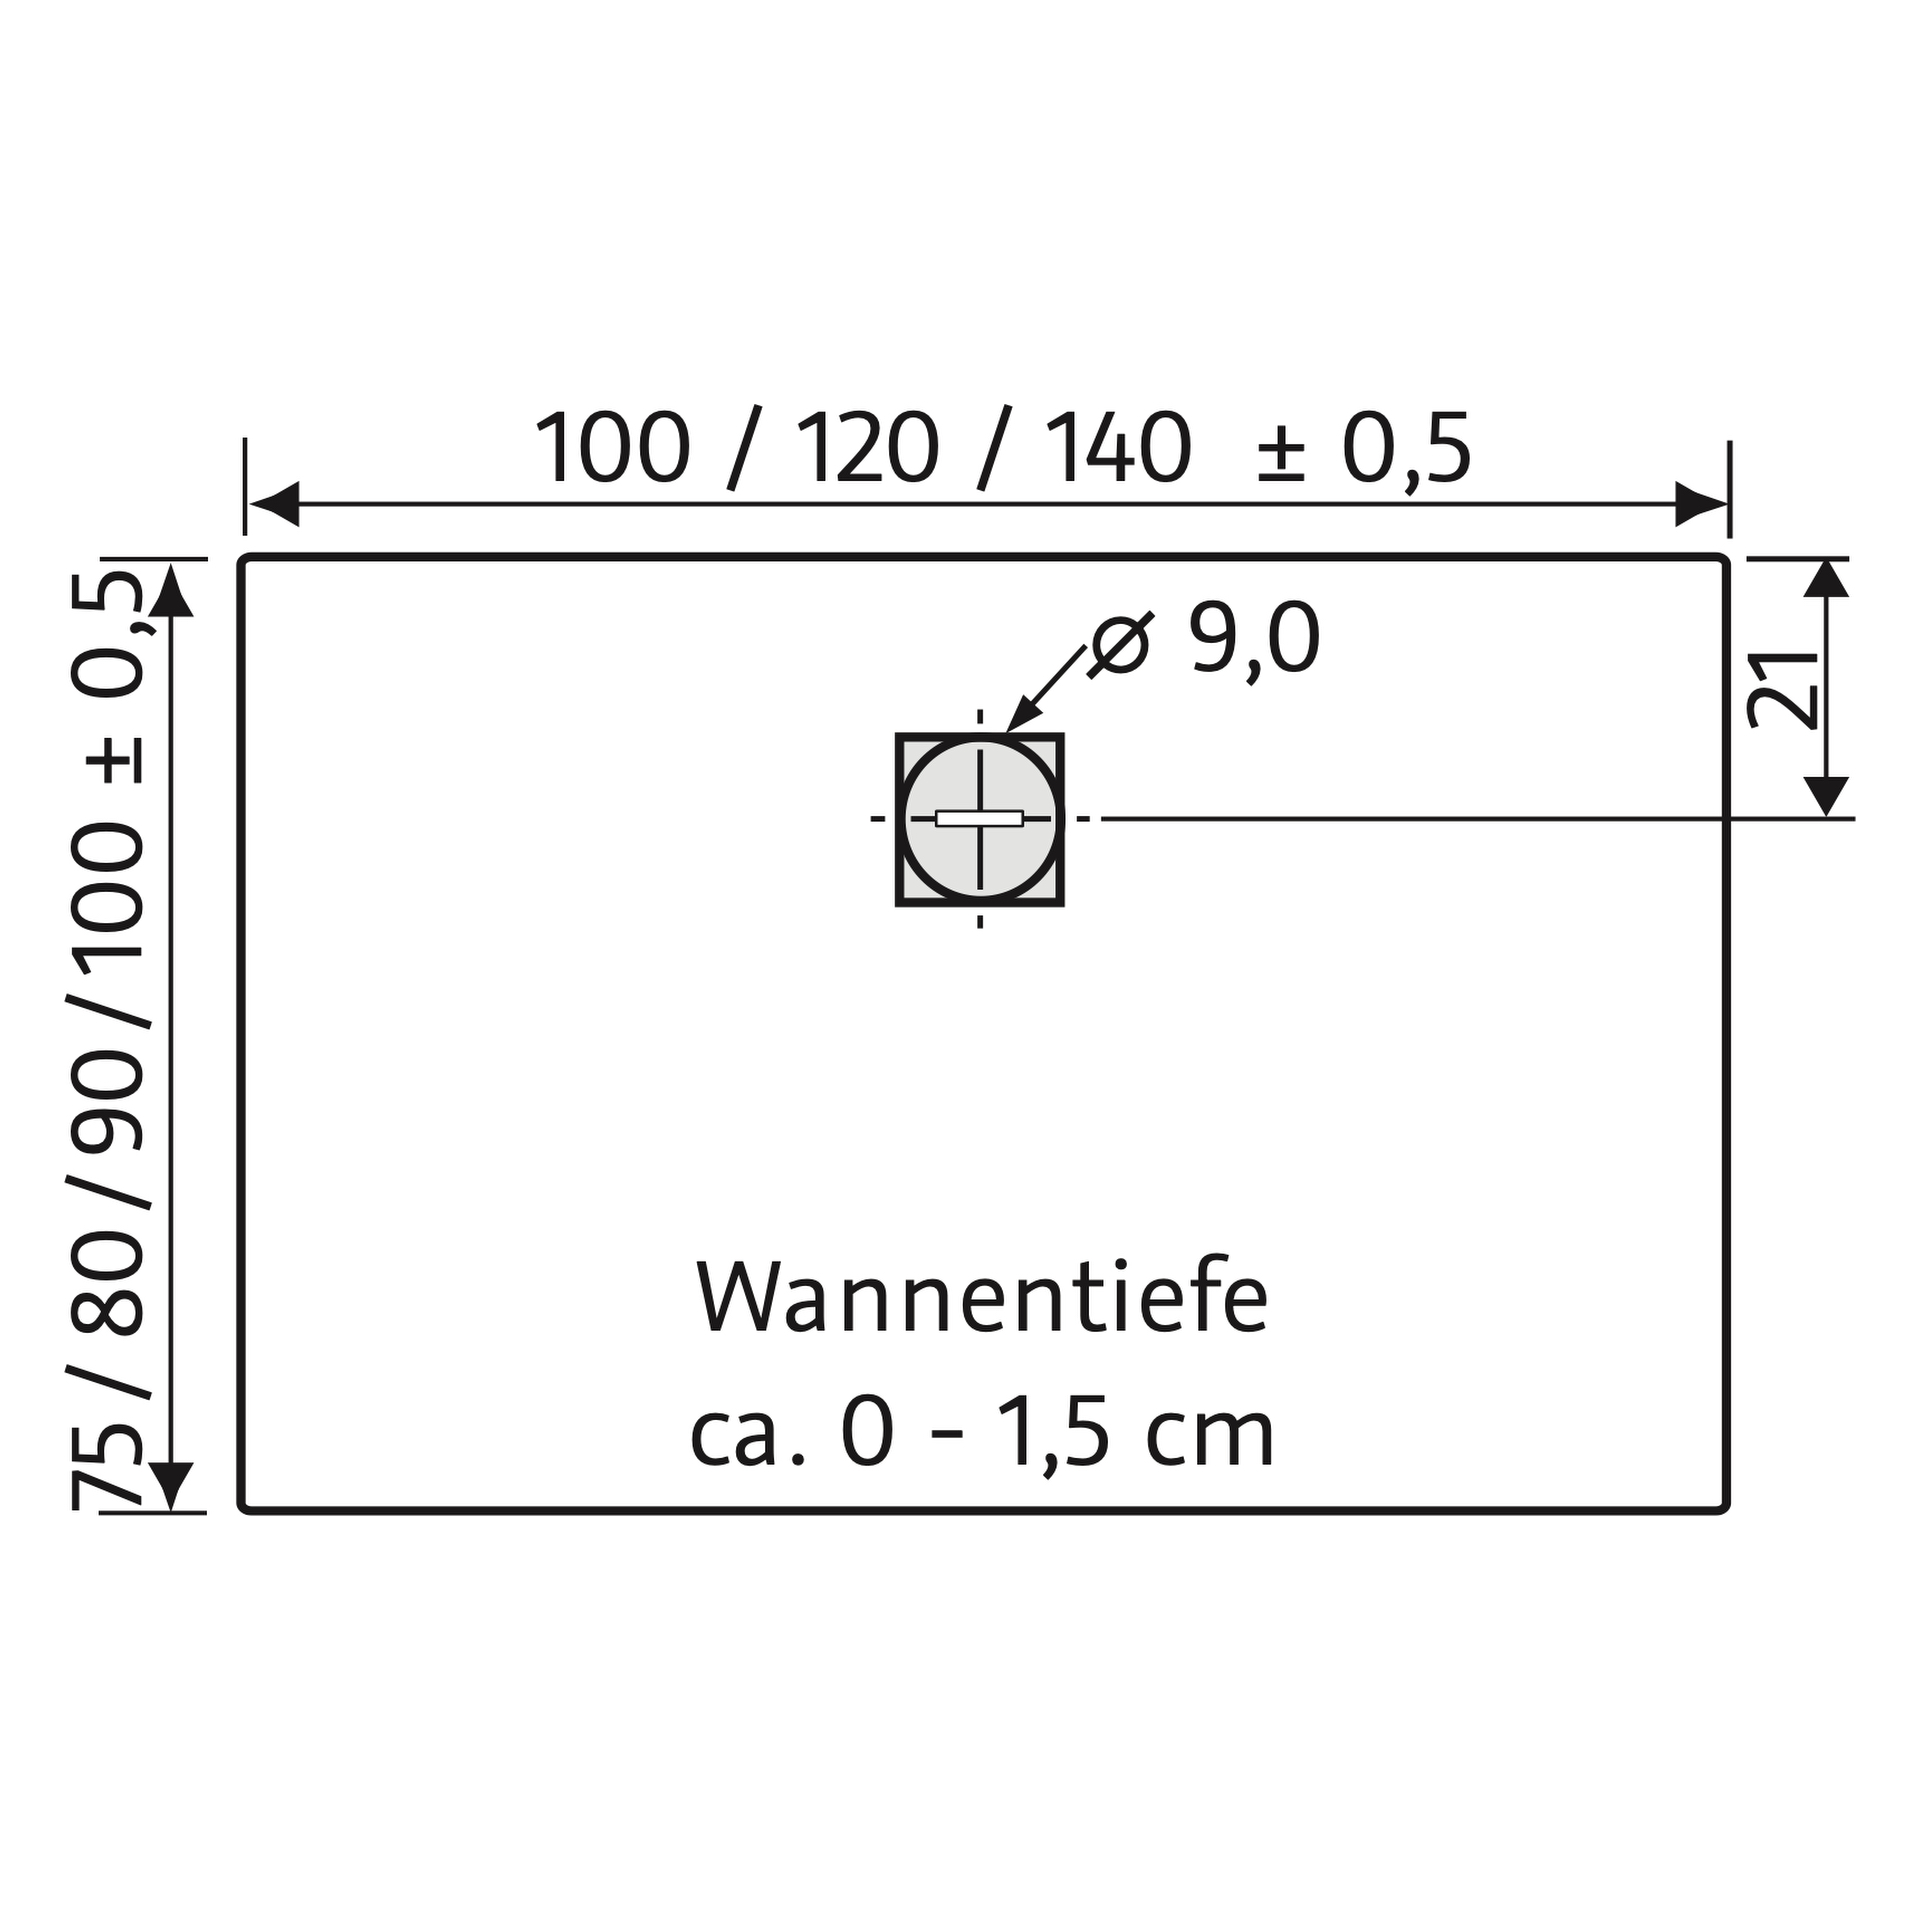 HSK rechteck Marmor-Polymer-Duschwanne „Steinoptik“ 75 × 100 cm in Sandstein